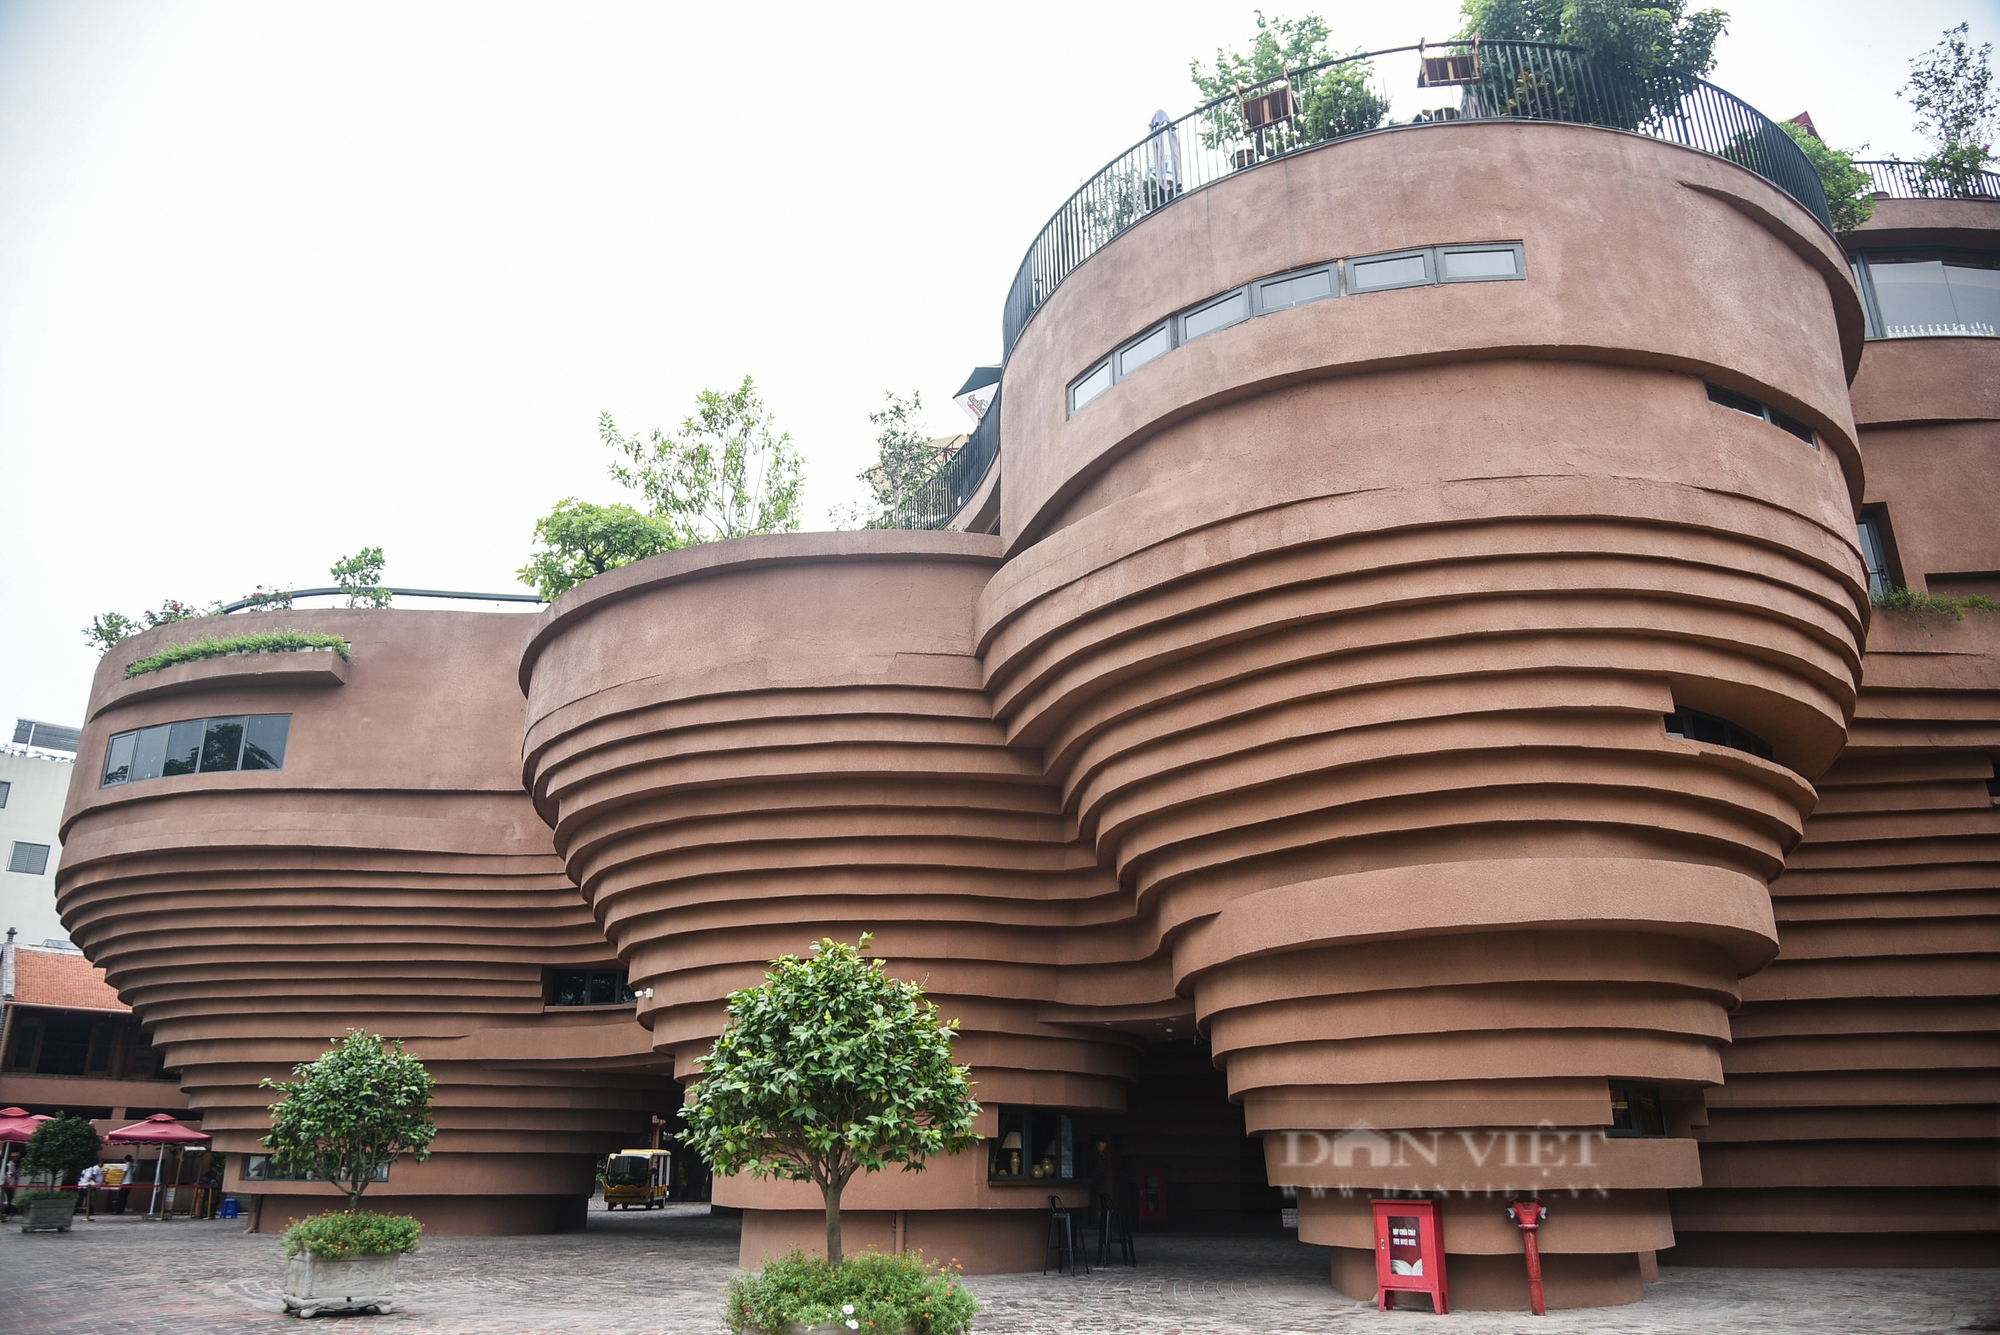 Độc đáo bảo tàng gốm 150 tỉ đồng ở Bát Tràng - Ảnh 2.